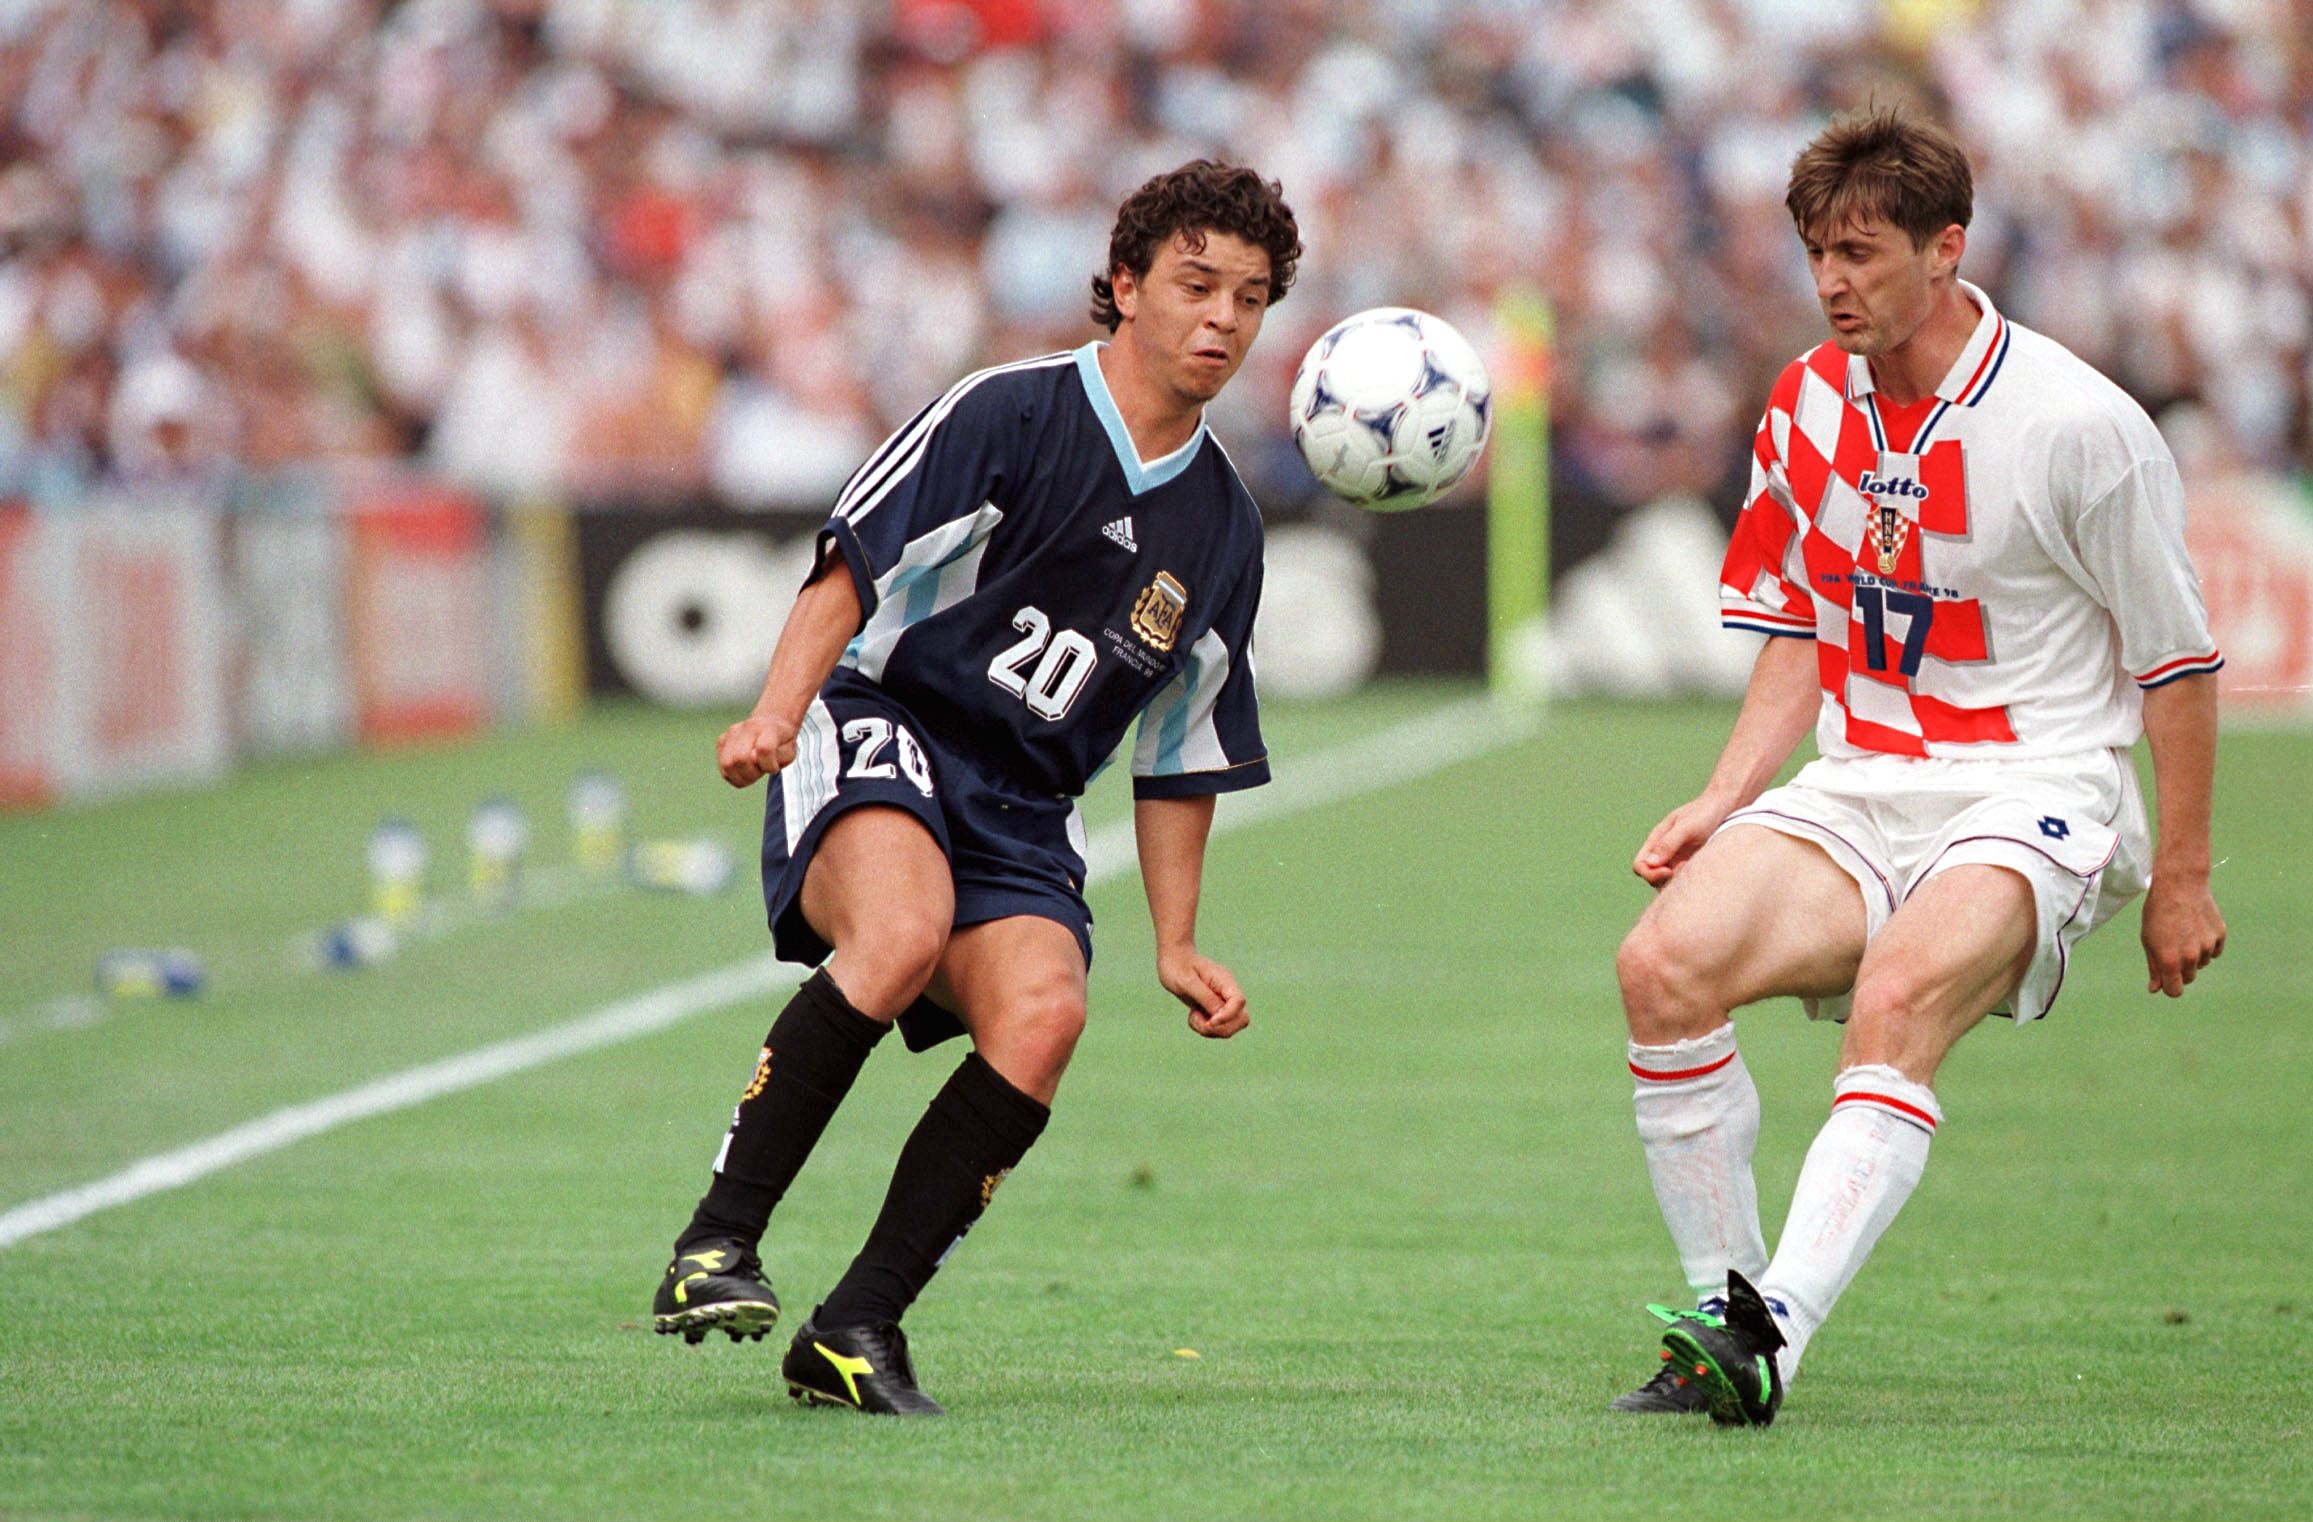 Francia 1998, el primer choque mundialista entre Argentina y Croacia. Los albicelestes ganaron por 1 a 0 (Photo by THIERRY ORBAN/Sygma via Getty Images)